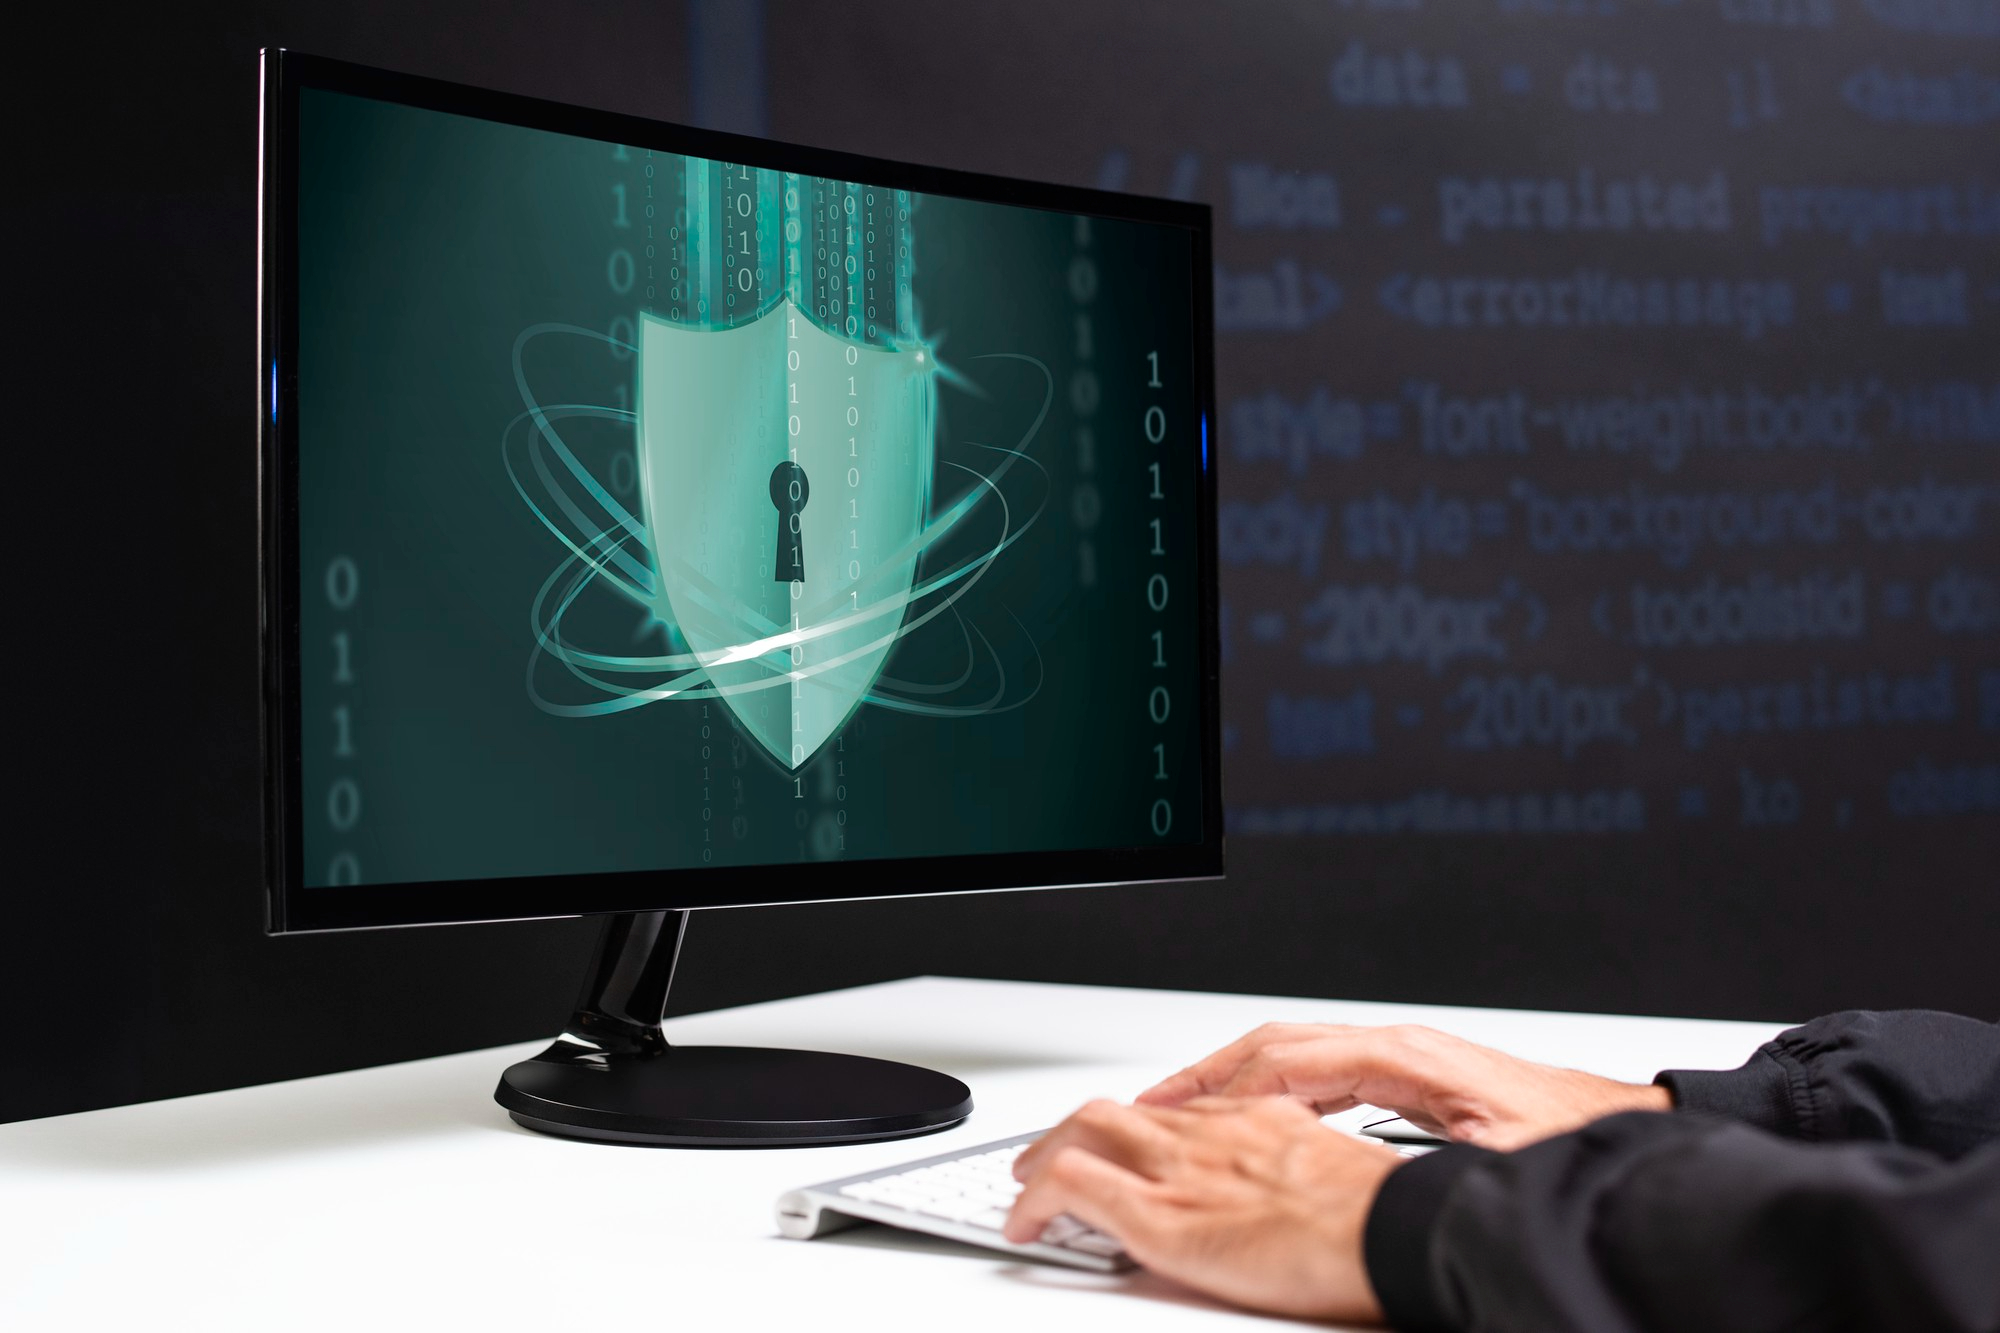 Cum să-ți protejezi sistemul Linux împotriva atacurilor malware?